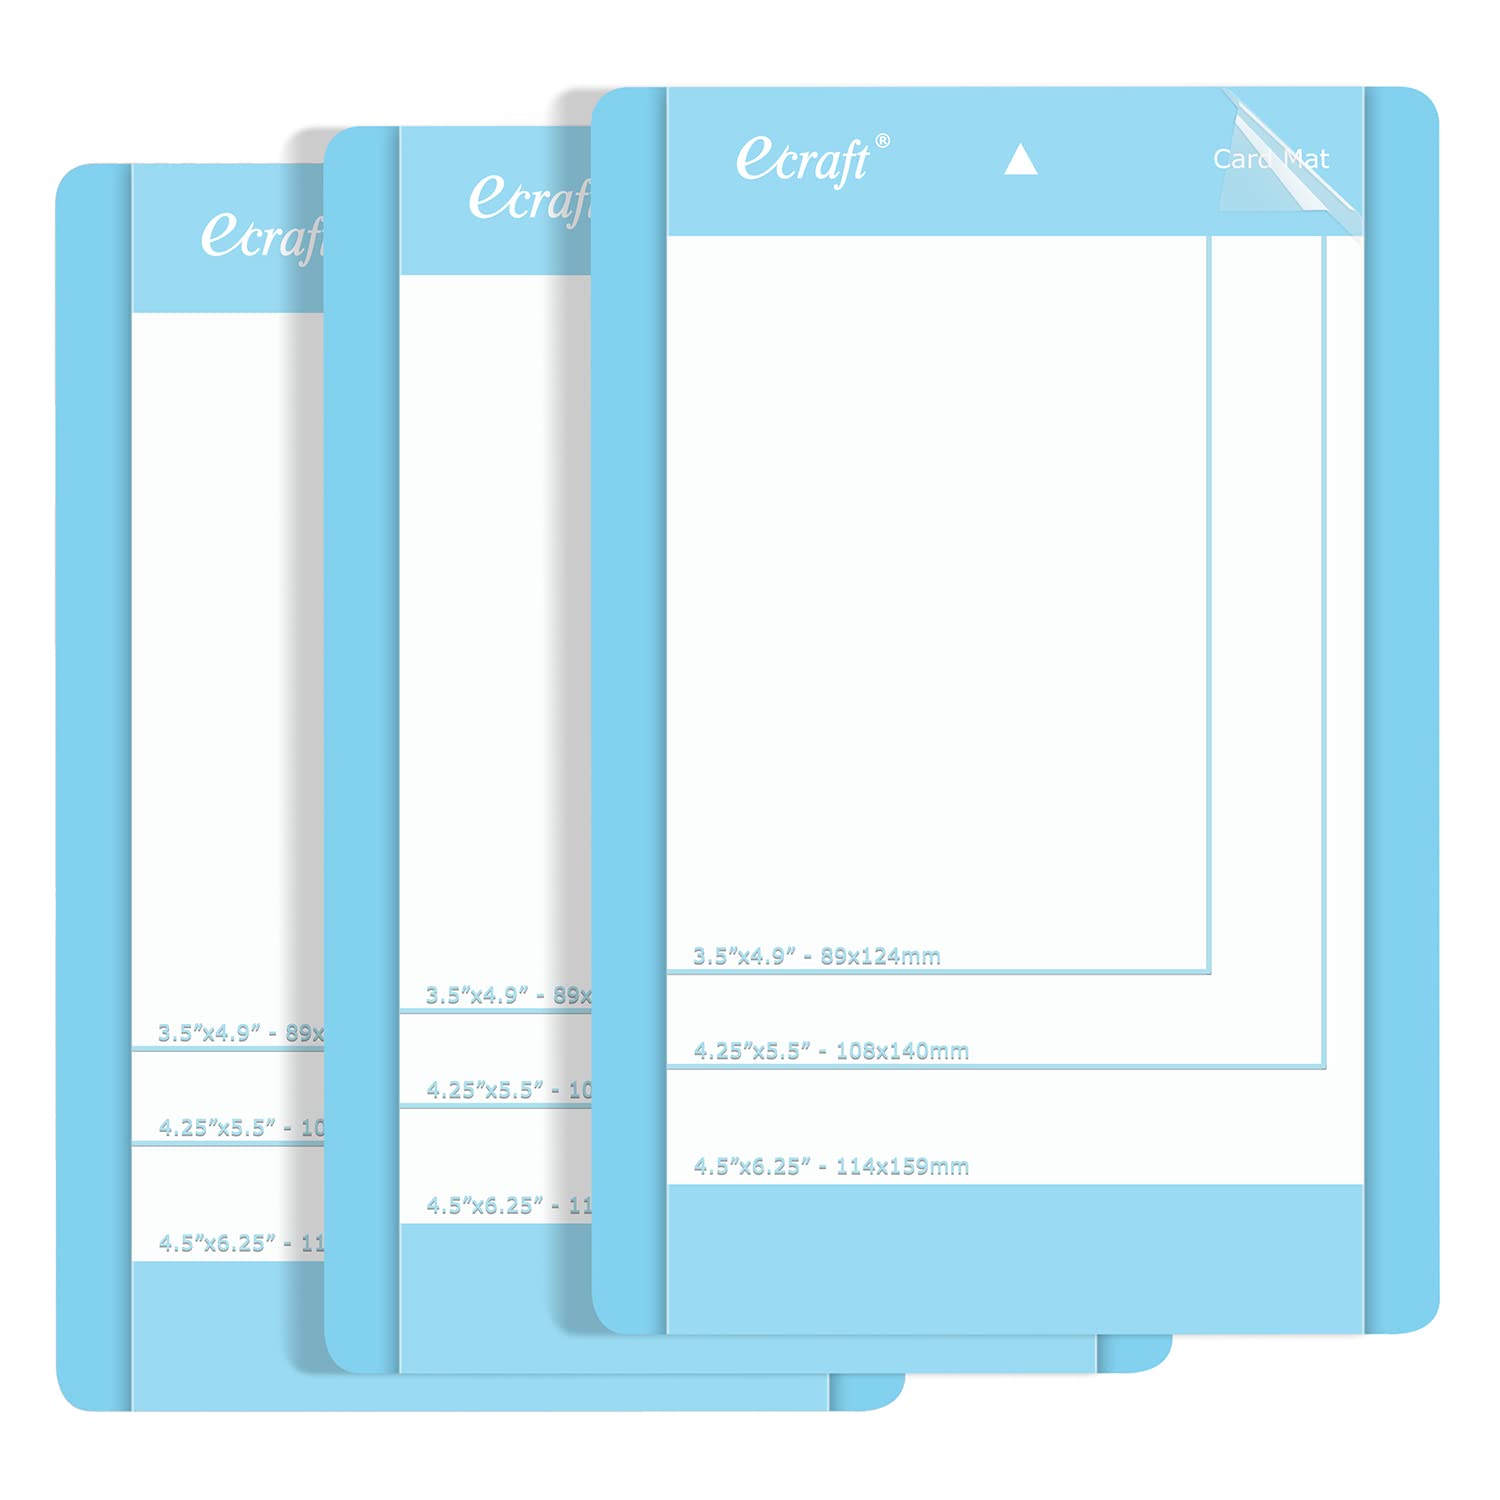 6 Pack: Cricut Joy™ Card Mat, 4.5 x 6.25 